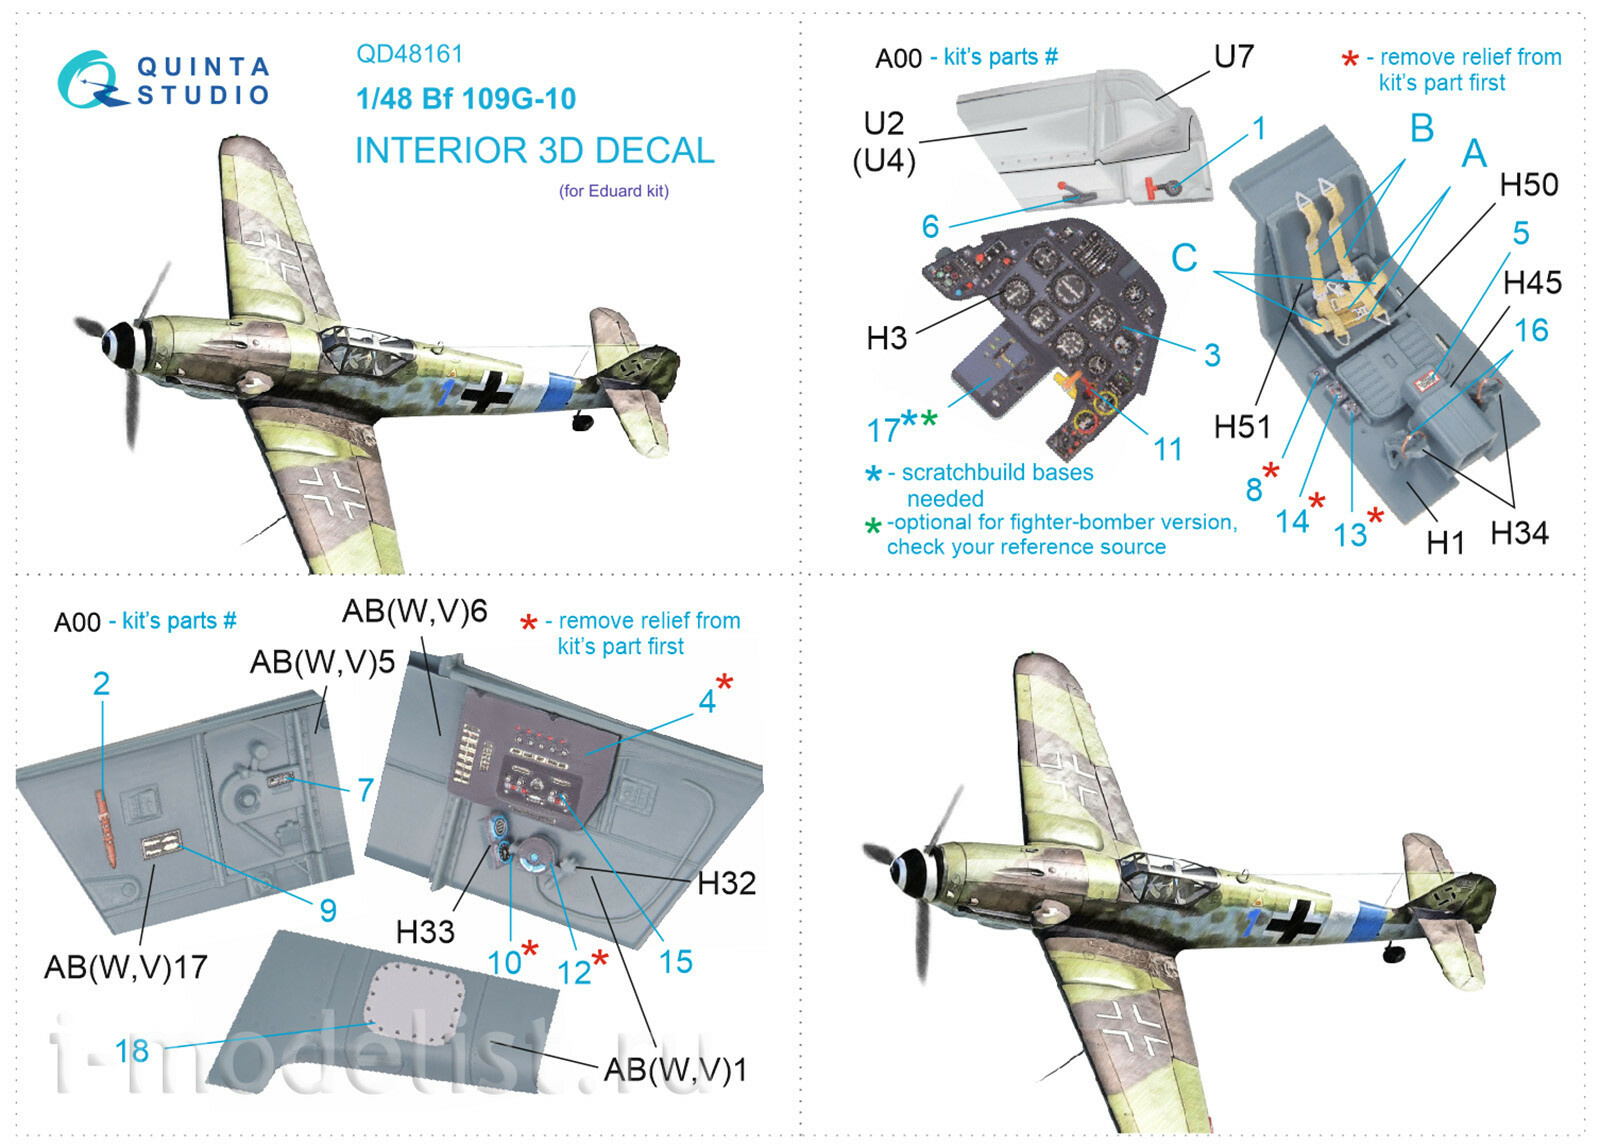 QD48161 Quinta Studio 1/48 3D Декаль интерьера кабины Bf 109G-10 (Eduard)